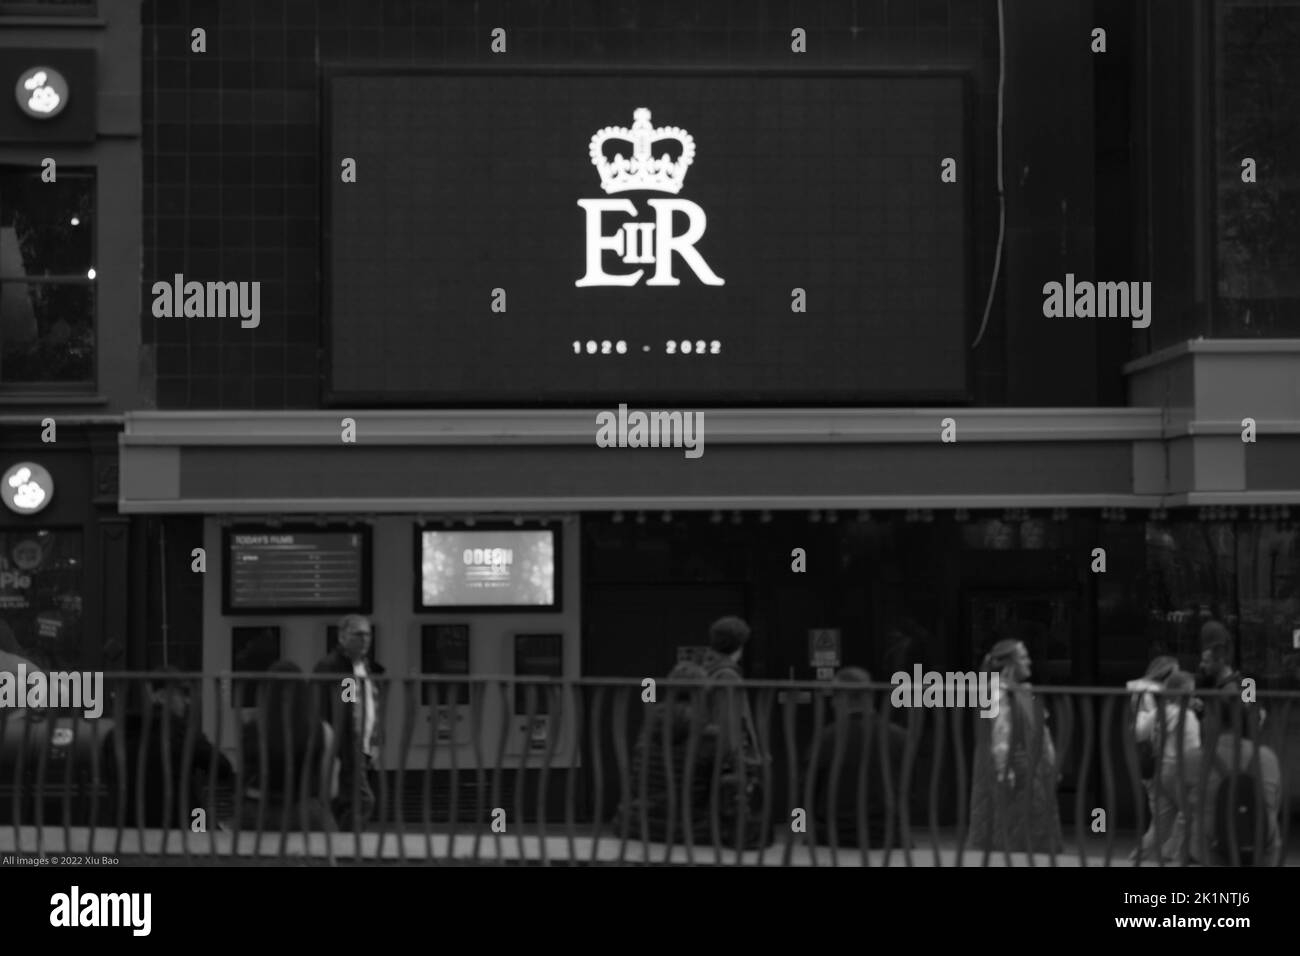 Londres, Reino Unido, 19th de septiembre de 2022. El Royal Cypher EIIR se muestra en un cartel digital en el centro del oeste de Londres para rendir homenaje a Su Majestad la Reina y conmemorar su largo servicio a nuestra nación. Crédito: Xiu Bao/Alamy Live News Foto de stock